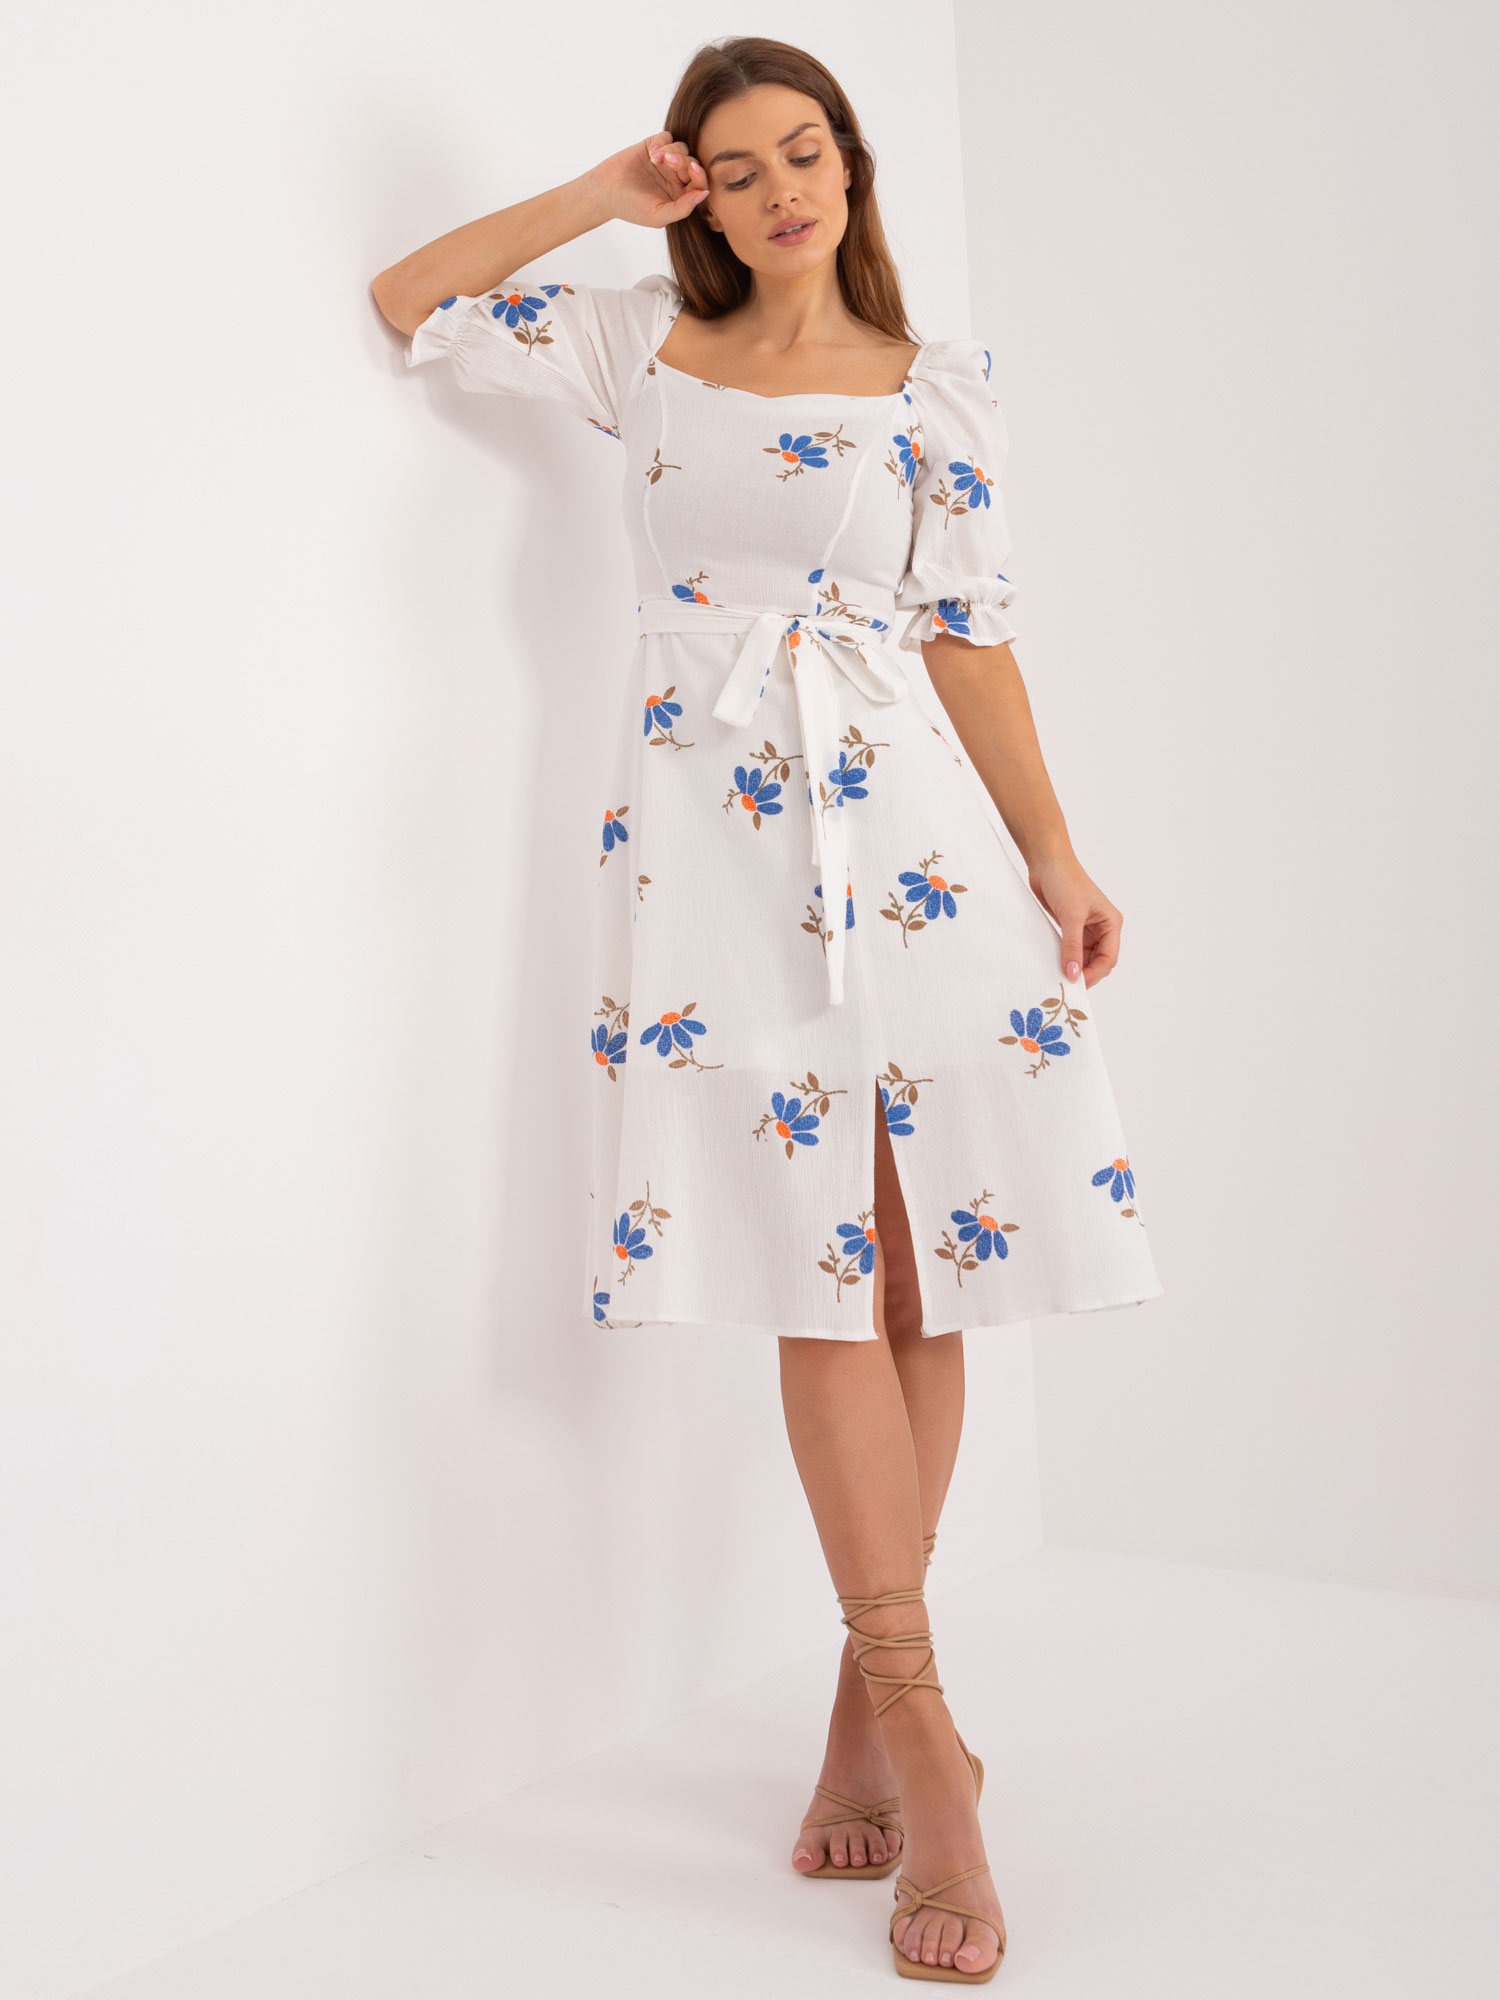 Bílé šaty s modrými květinami -LK-SK-508964-3.95-white-blue Velikost: 38